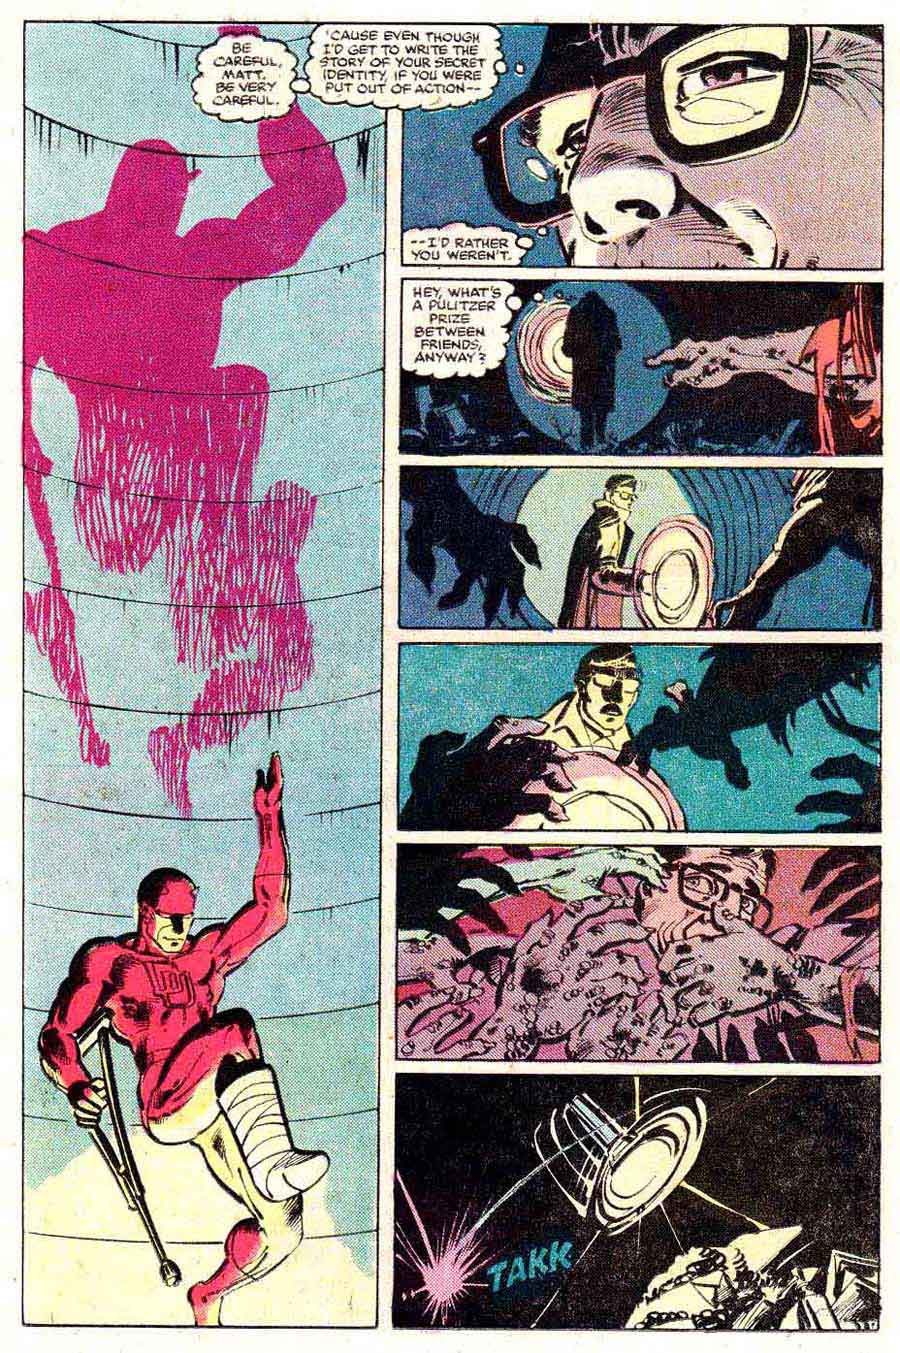 Daredevil v1 #180 marvel comic book page art by Frank Miller